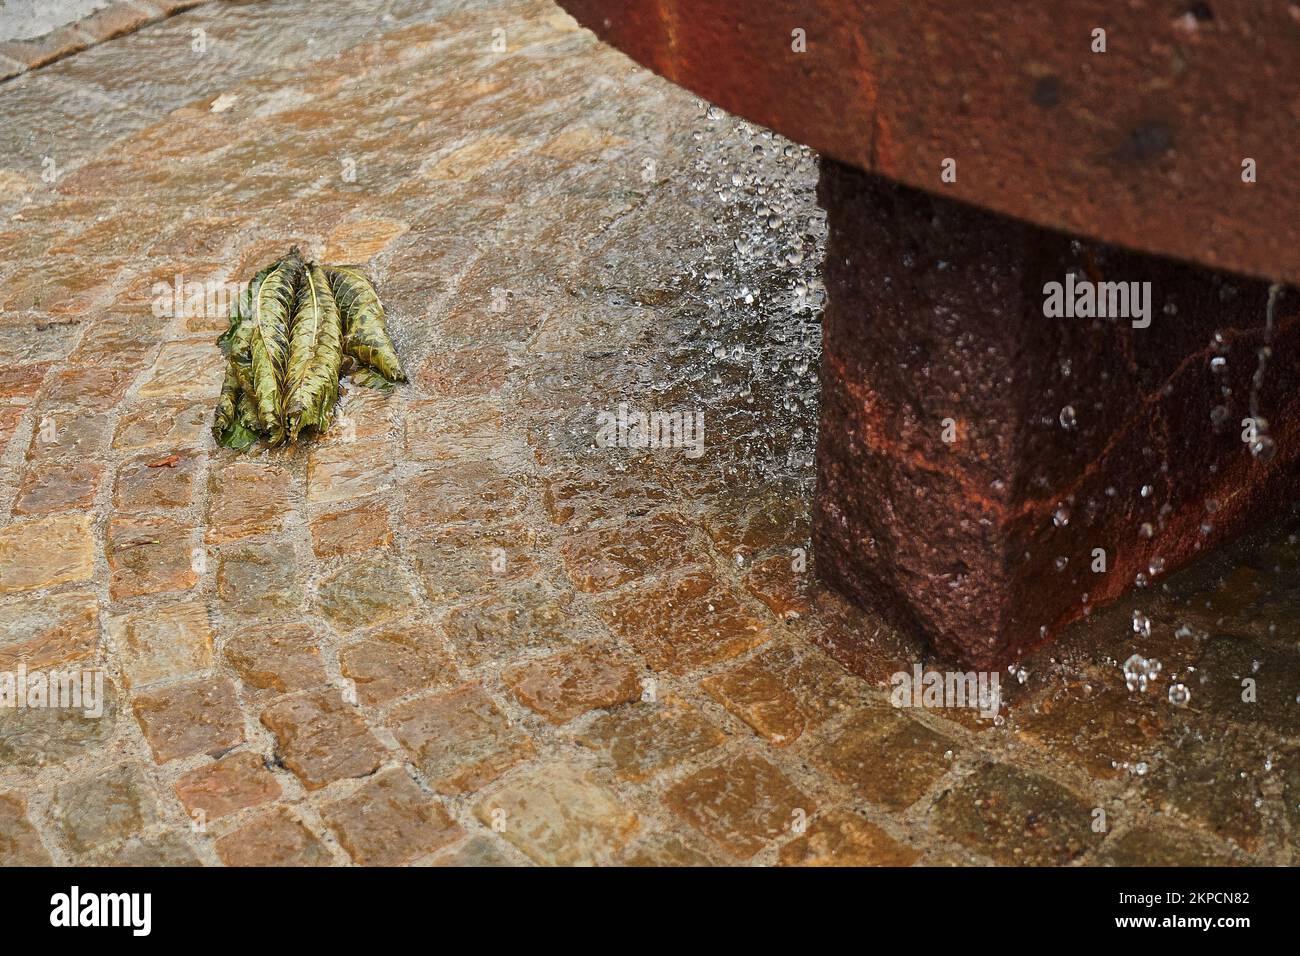 Une belle photo de feuilles vertes couchée dans le sol de la fontaine couverte d'eau Banque D'Images